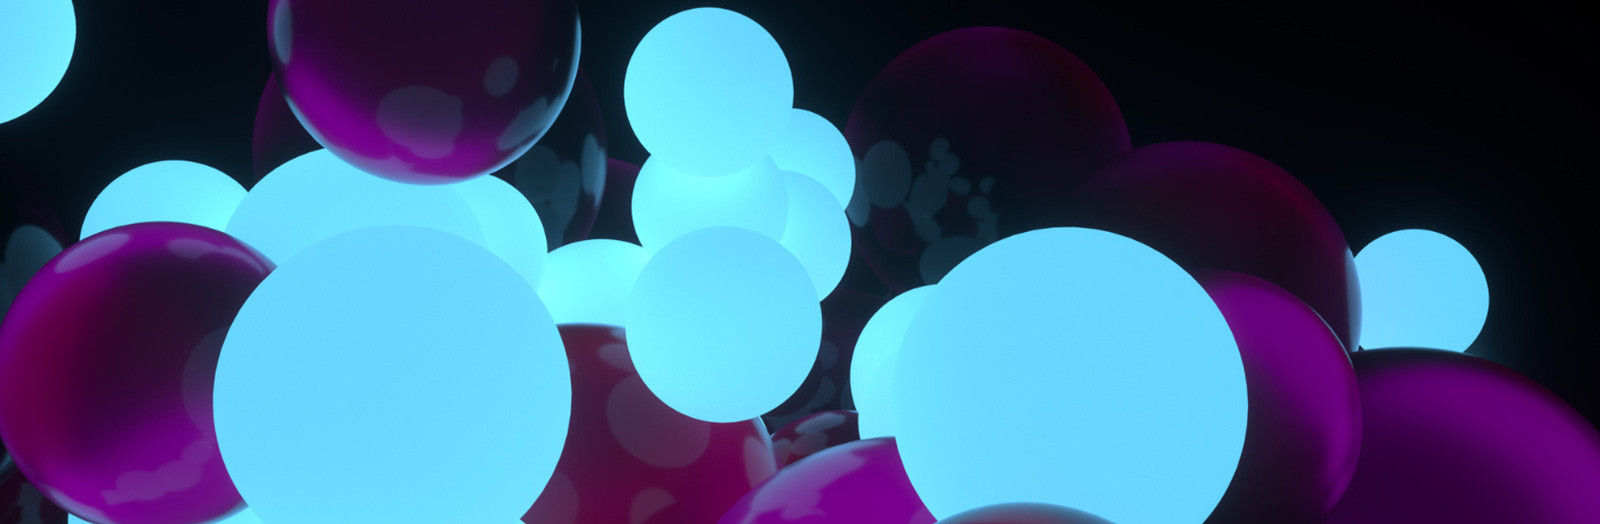 LED Ballon 40 cm lumineux avec LED lumières colorées